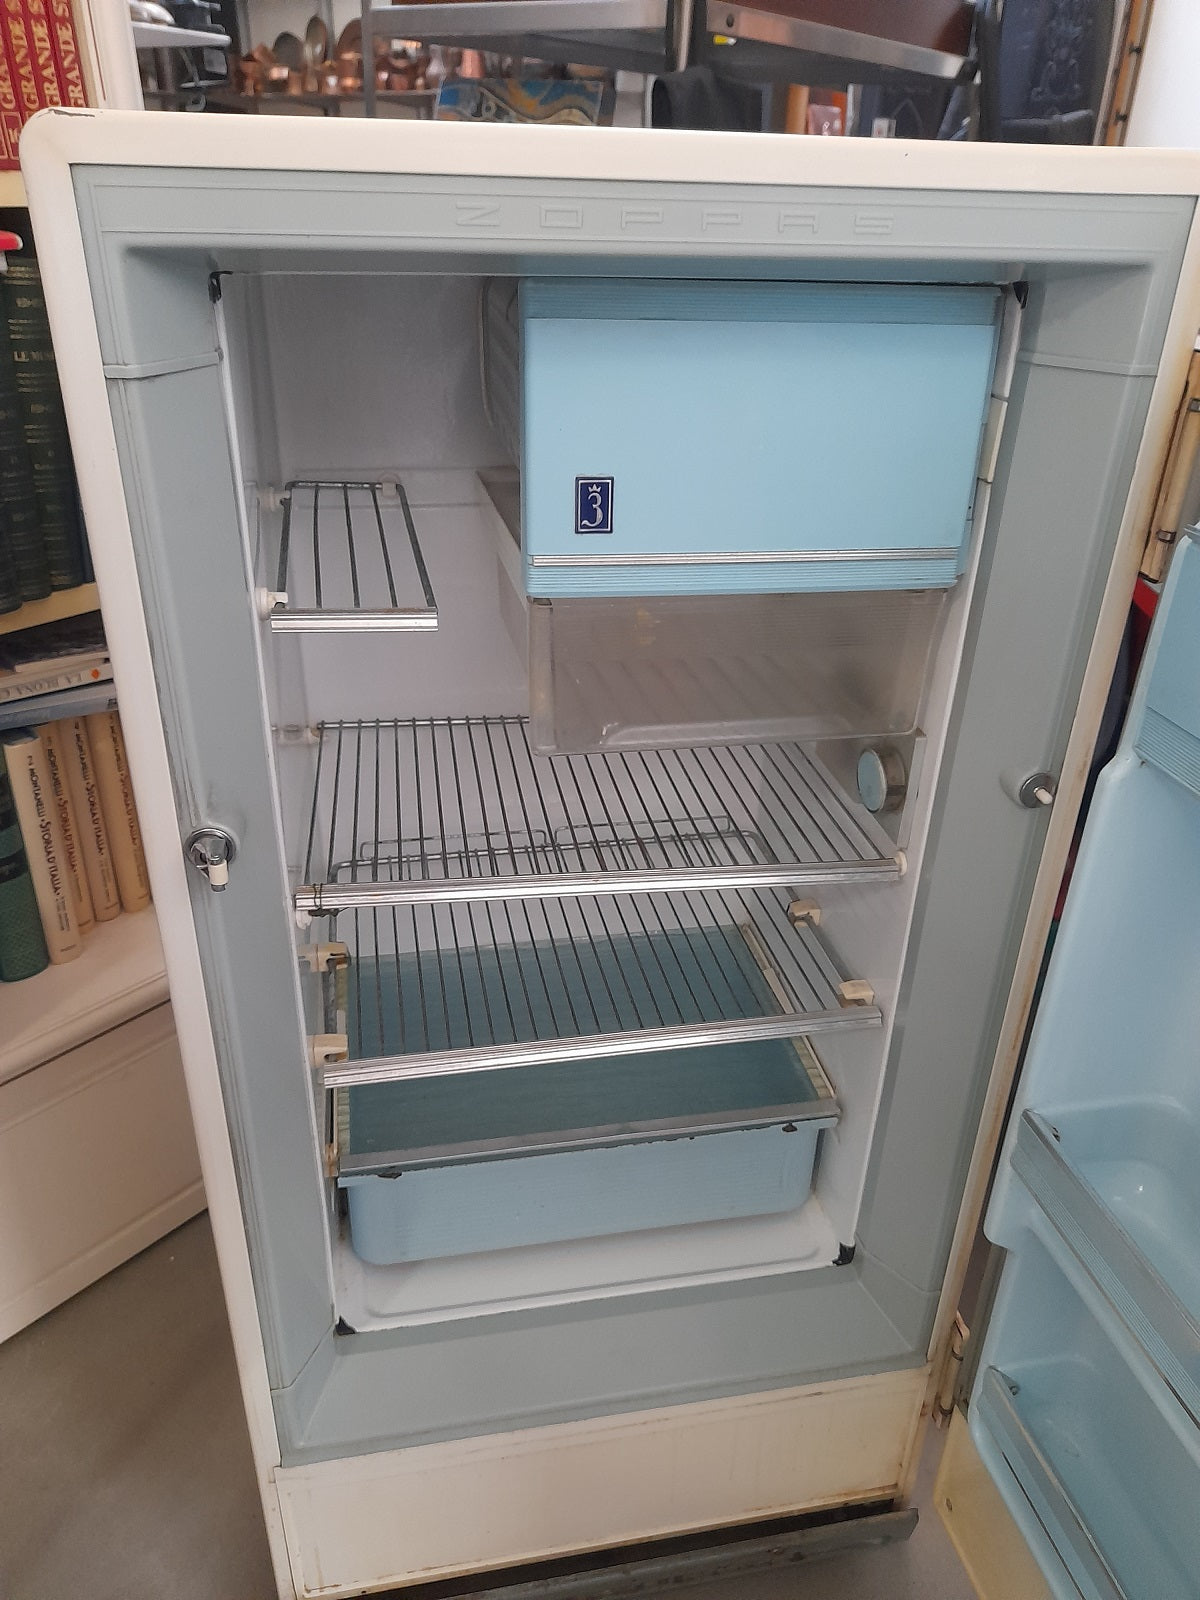 ZOPPAS frigorifero anni '60